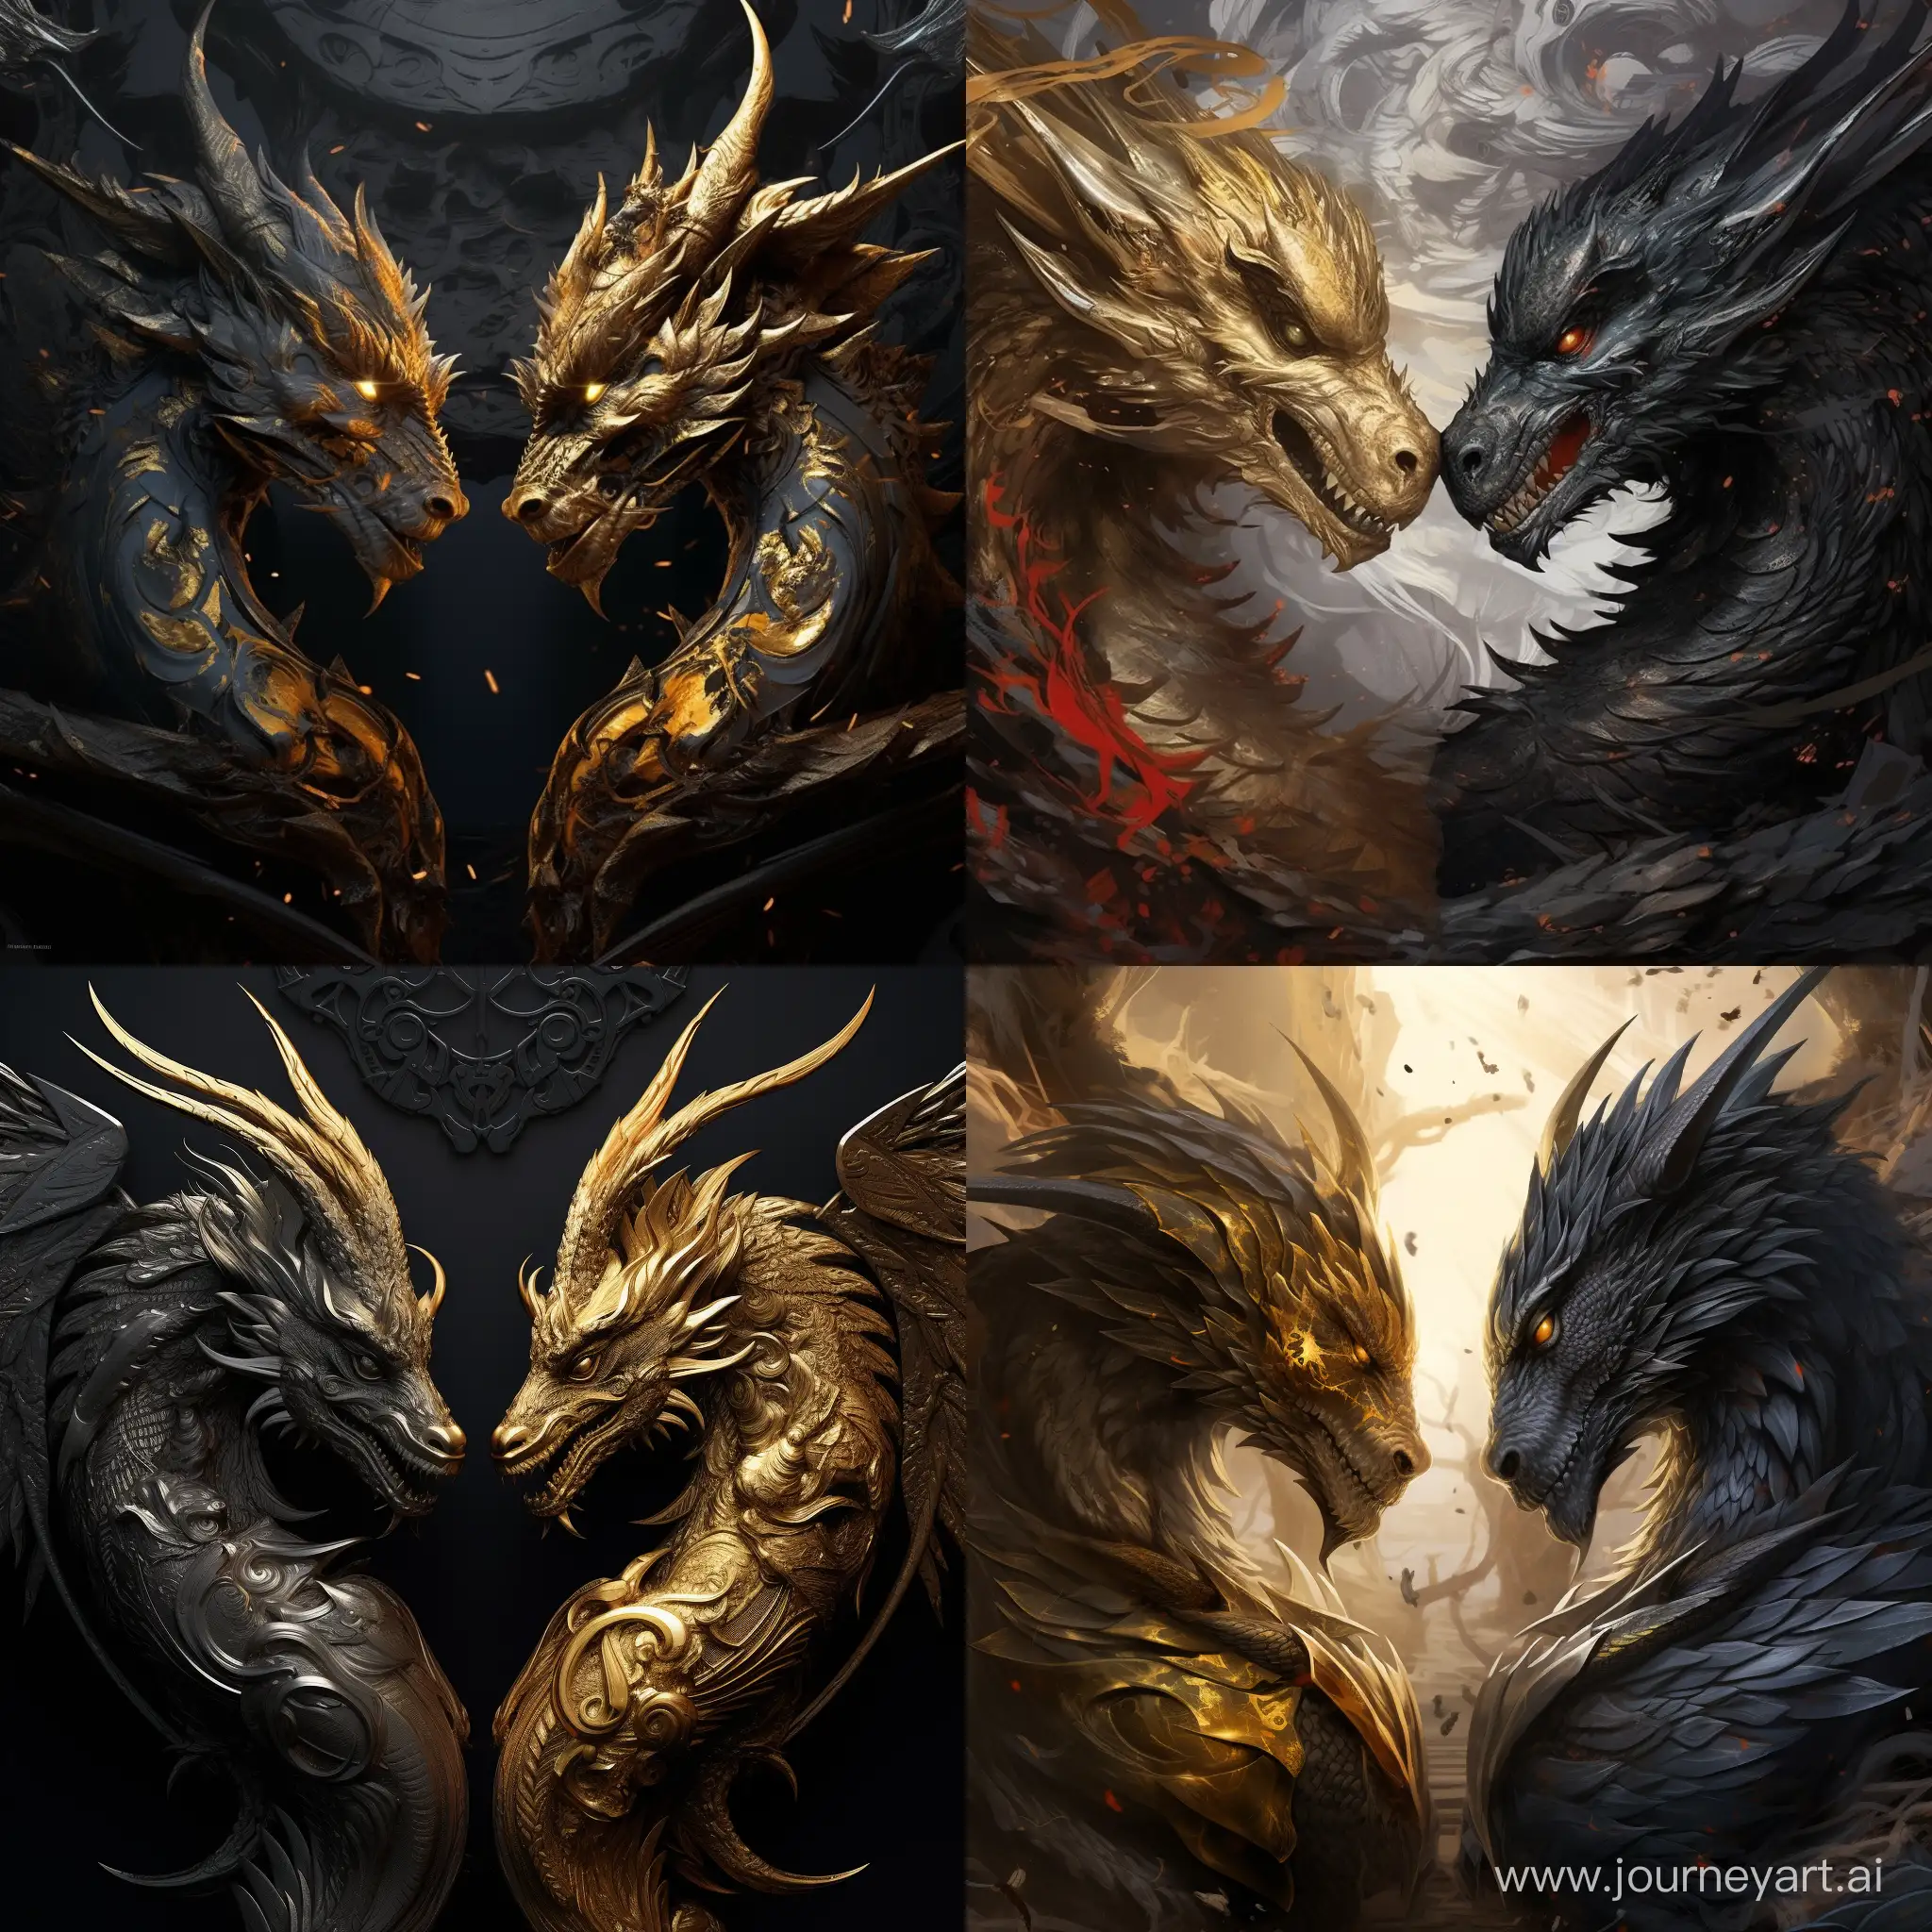 dos dragones estilo juego de tronos, uno negro enorme y otro mas pequeño color dorado